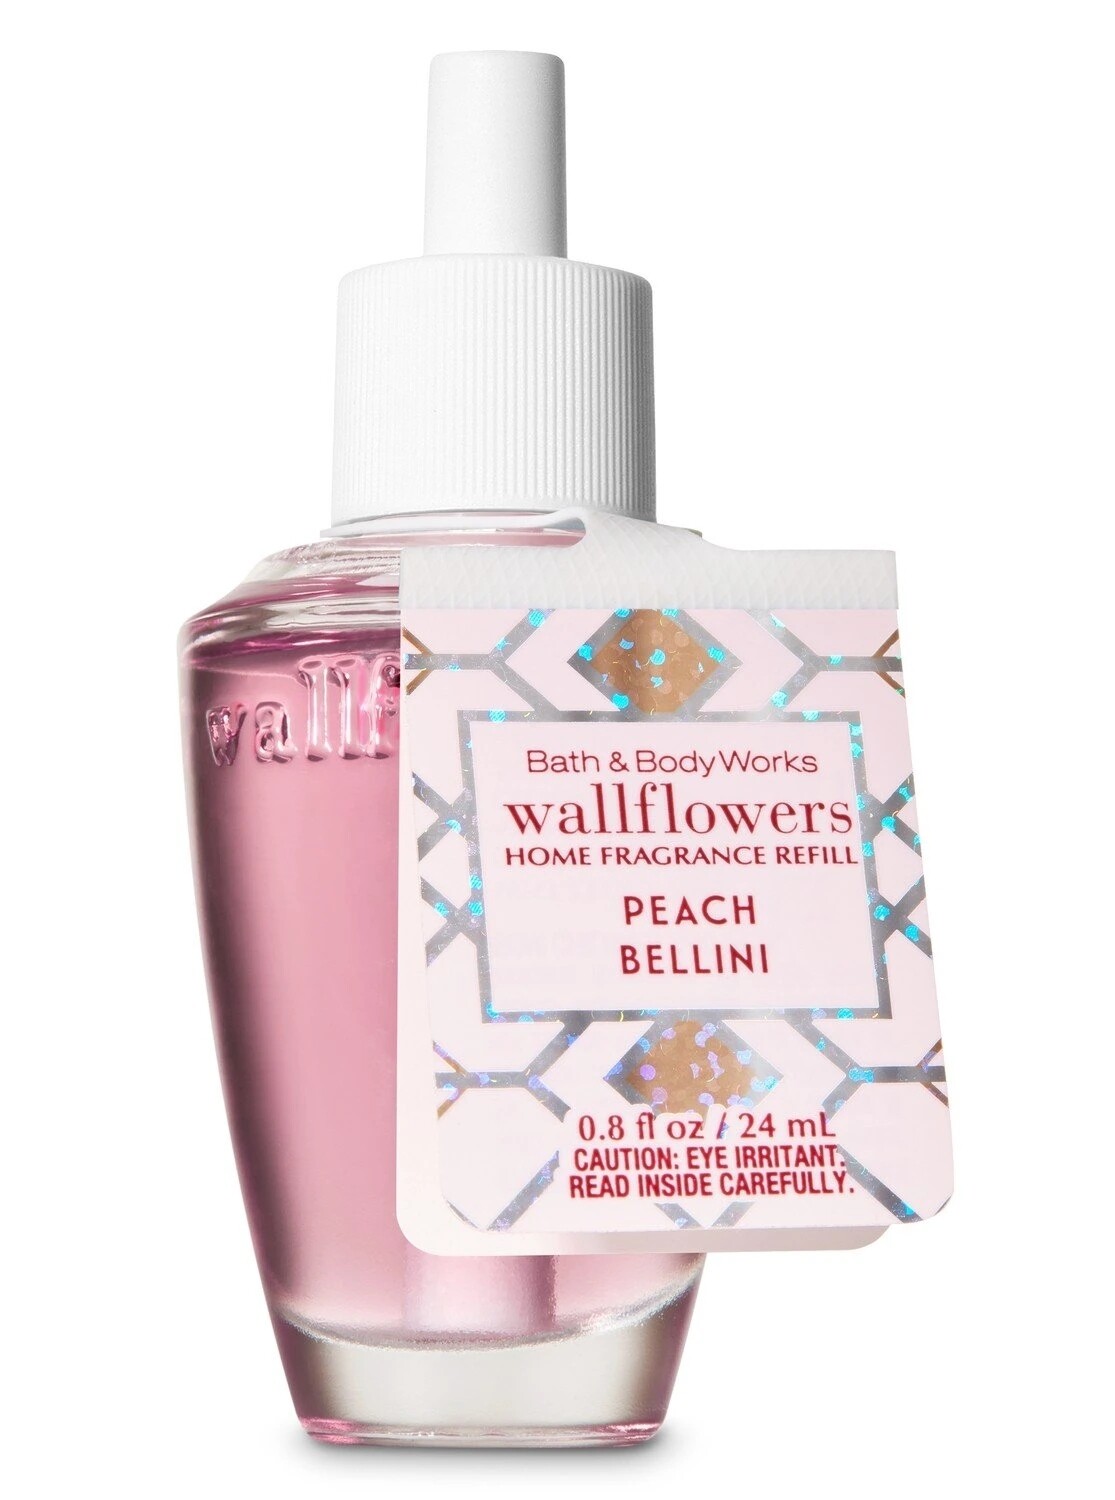 Bath and body works wallflower refill- peach bellini